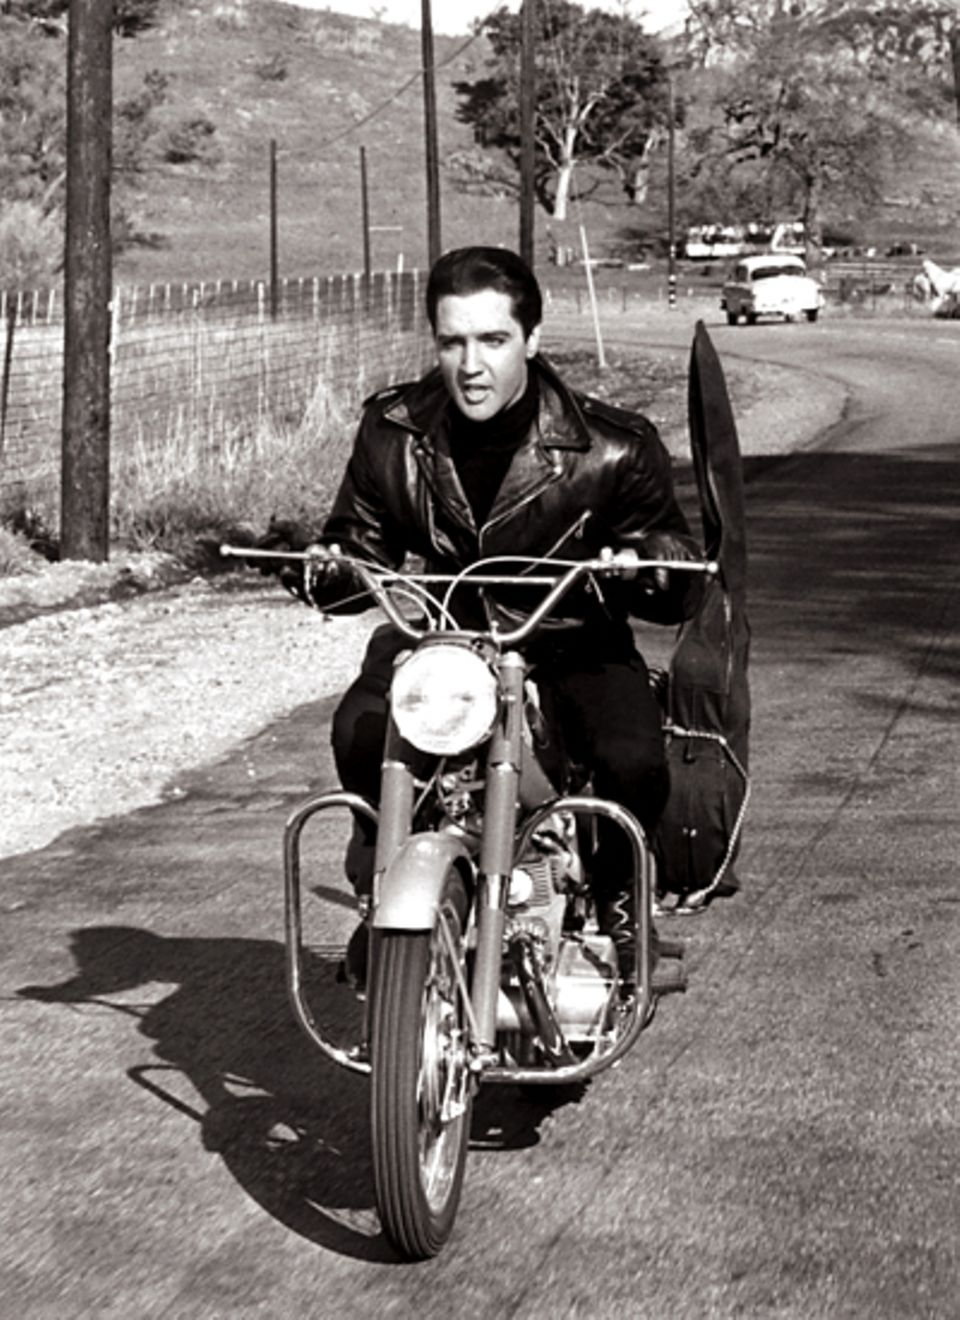 Stars & Bikes - Prominente und ihre Motorräder:
 Elvis Presley in "König der heißen Rhythmen" auf einer Honda Superhawk 350.